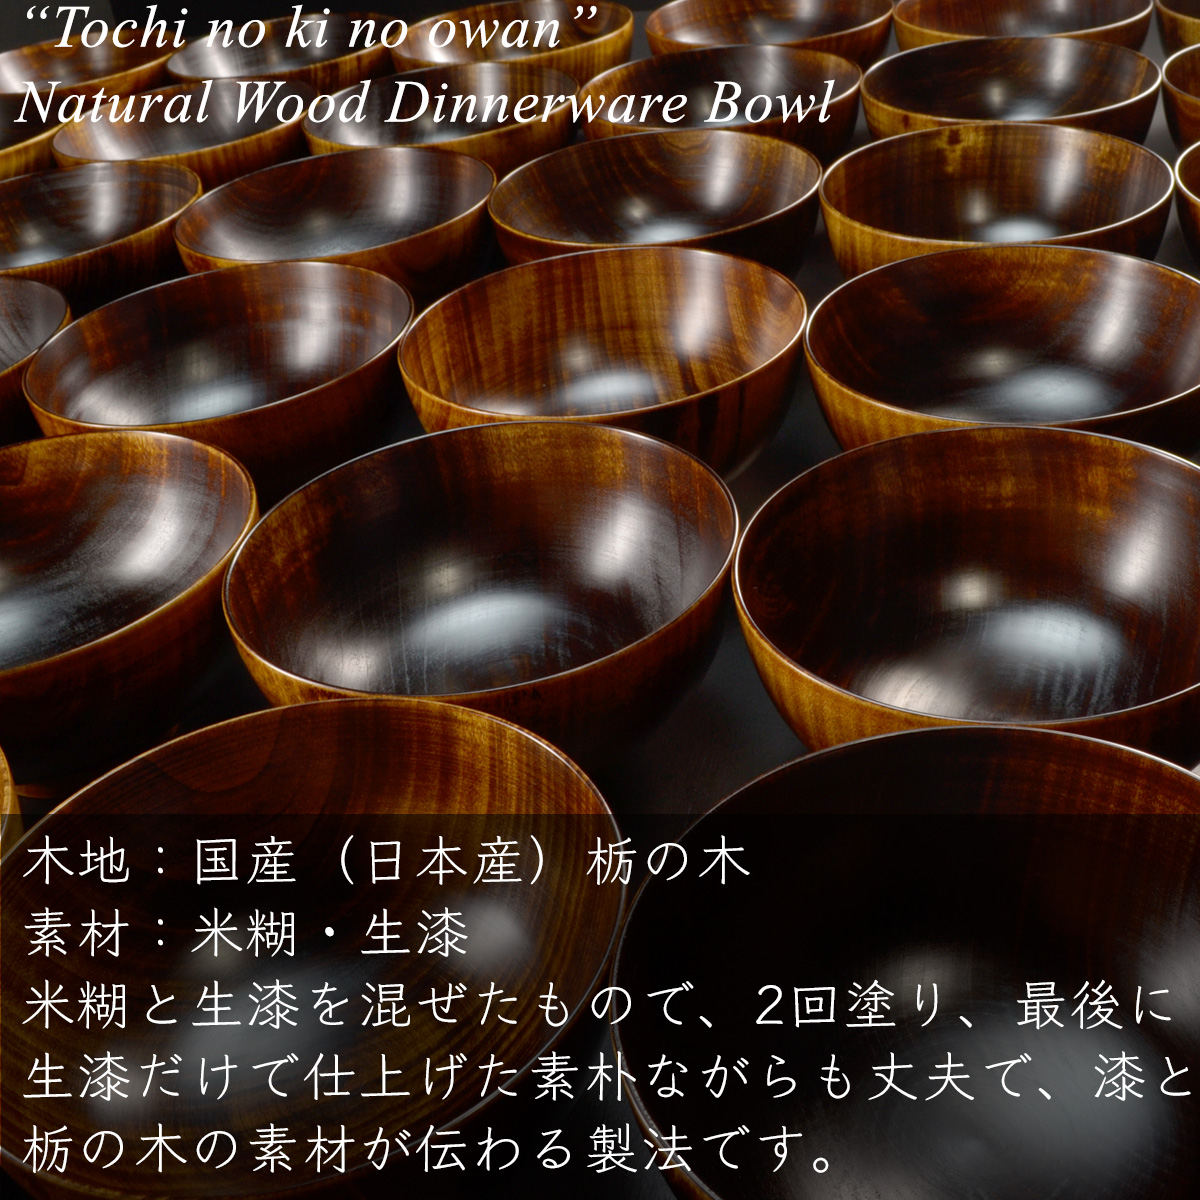 栃の木のお椀 小 汁椀 木製 拭き漆 漆器 一般サイズ おしゃれ 日本製 結婚祝い